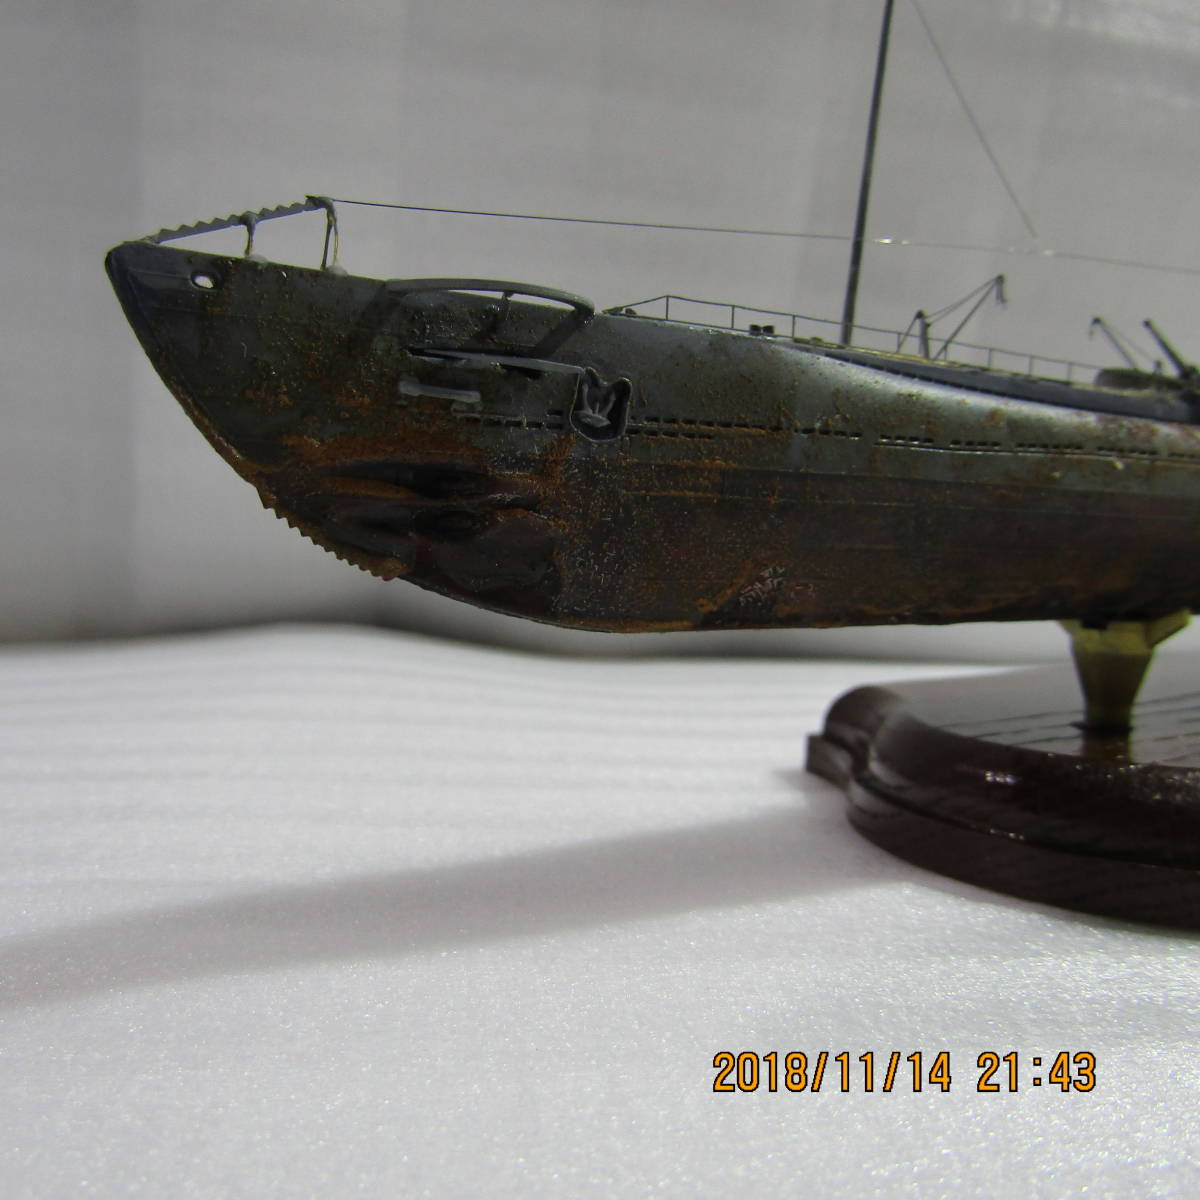 1/350日本海軍潛艇Haiku Univ。類型6 a 168（實際規格）/成品 原文:1/350 日本海軍潜水艦 海大6型a 伊168 (リアル仕様）/完成品